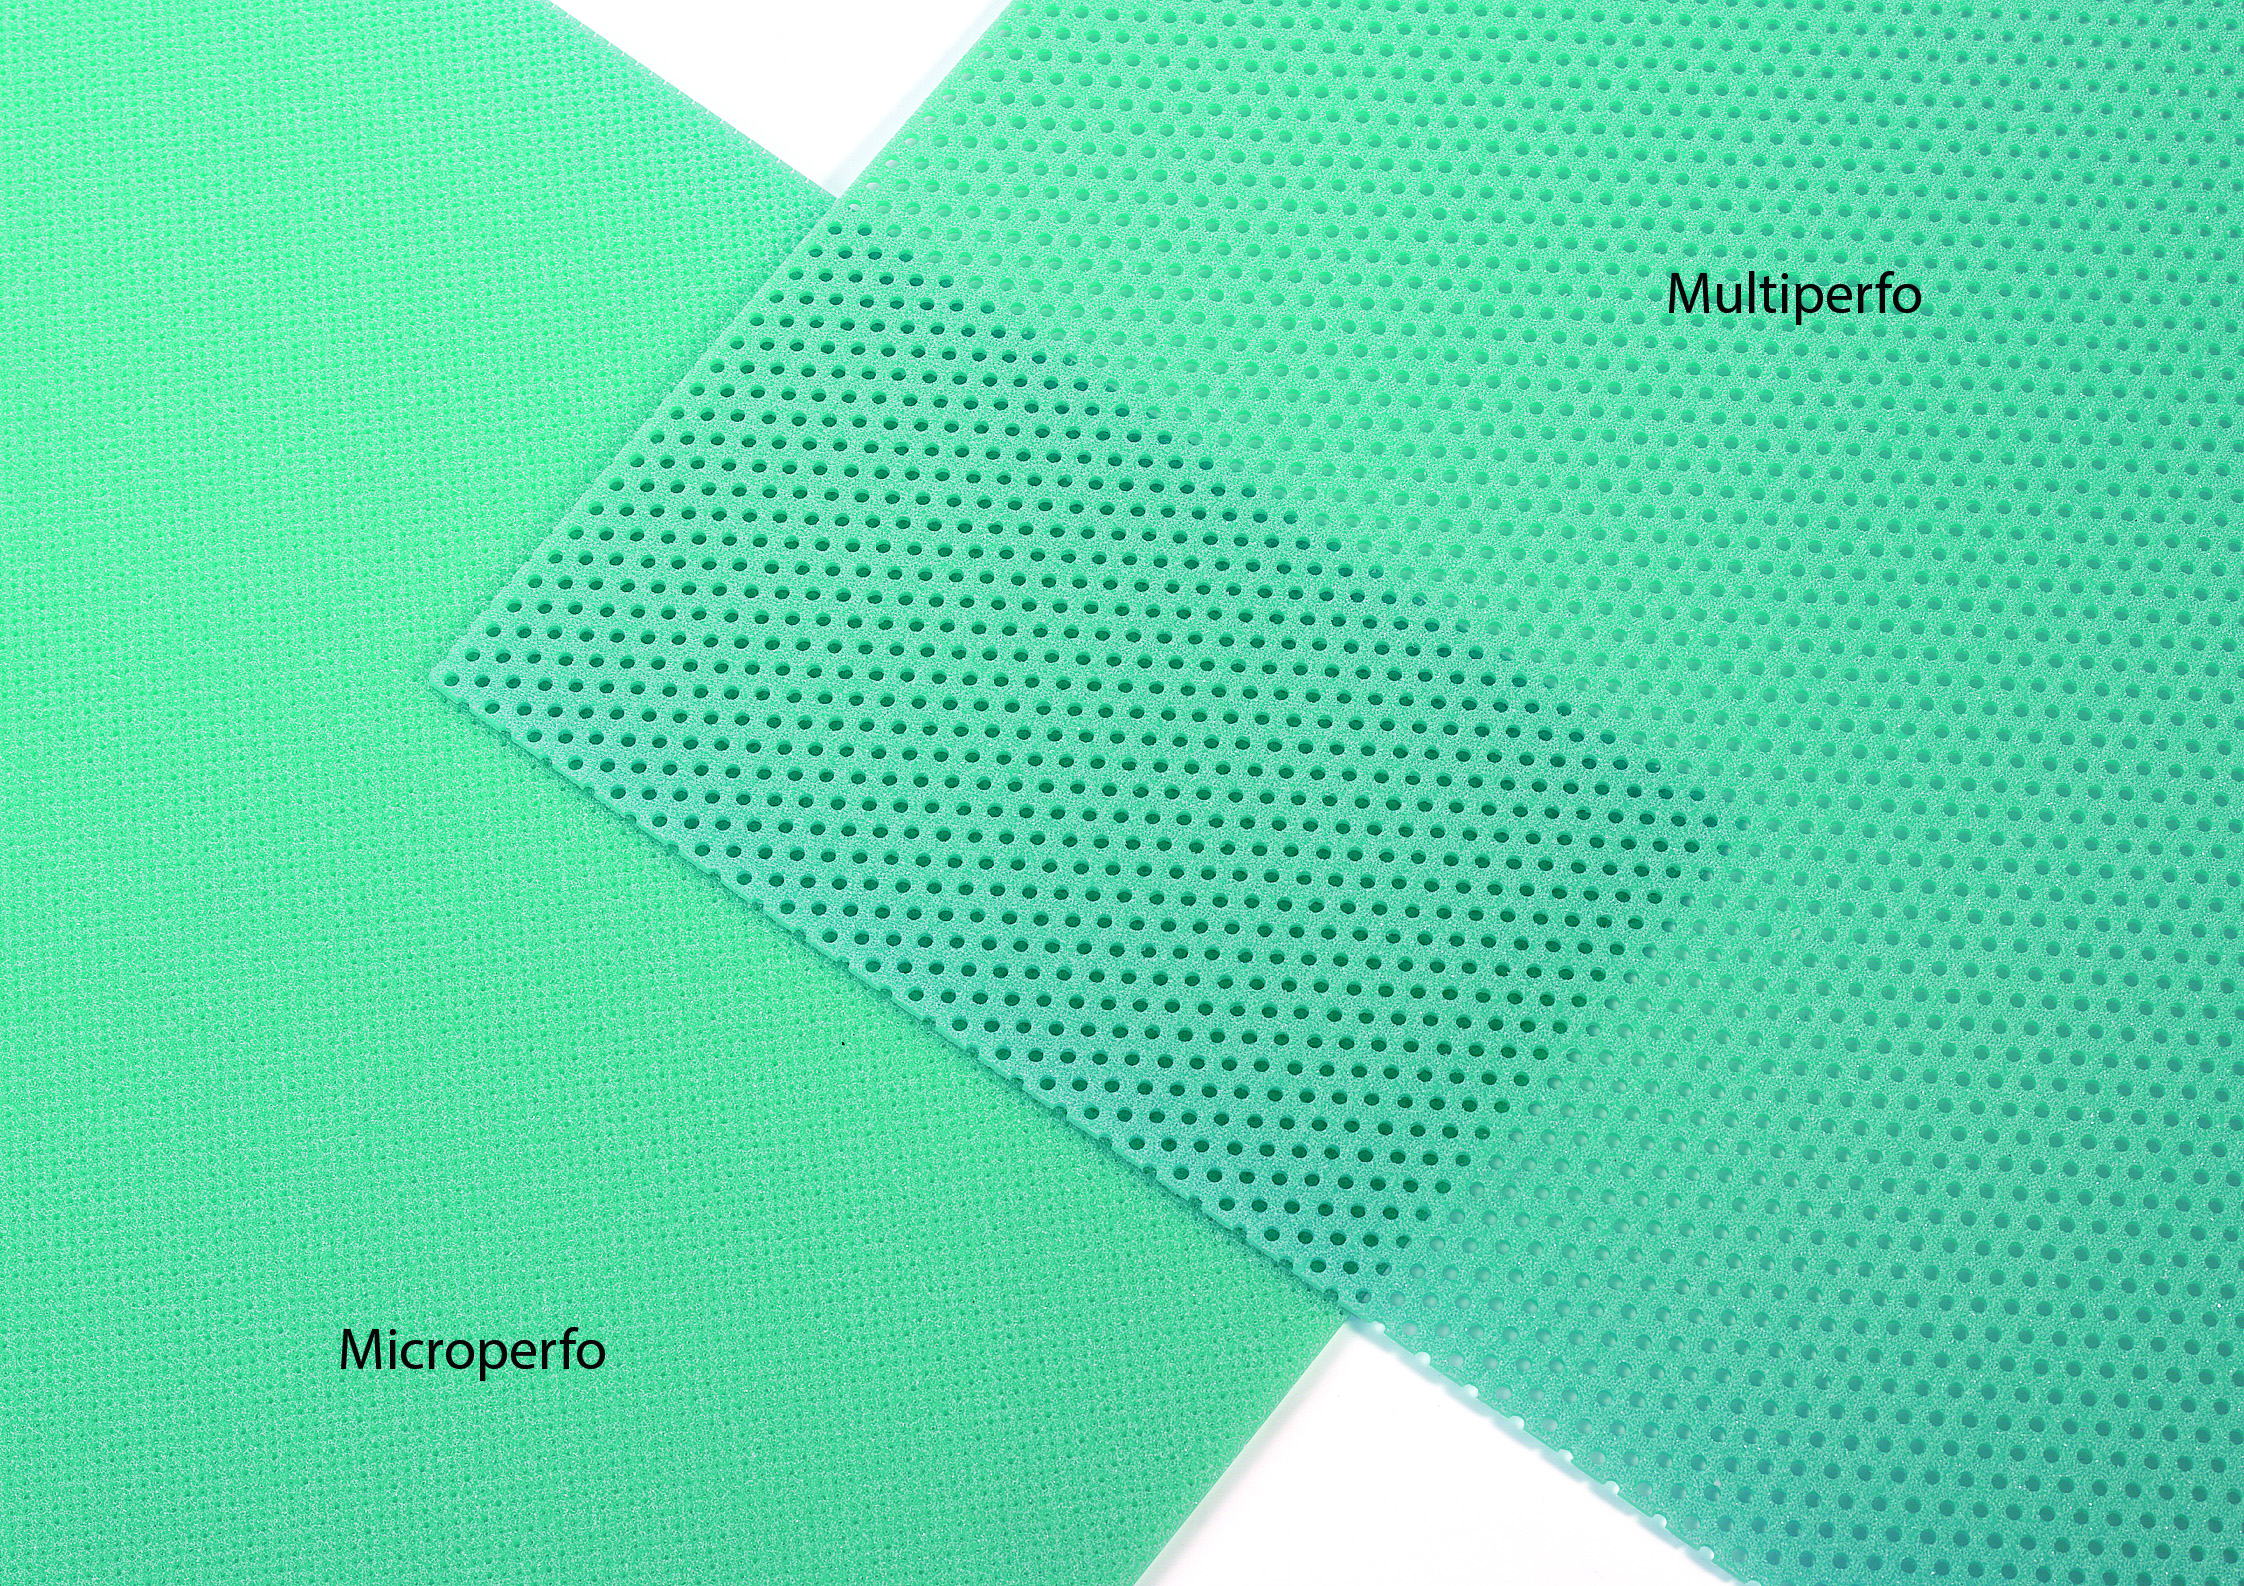 Microperfo vs. Multiperfo